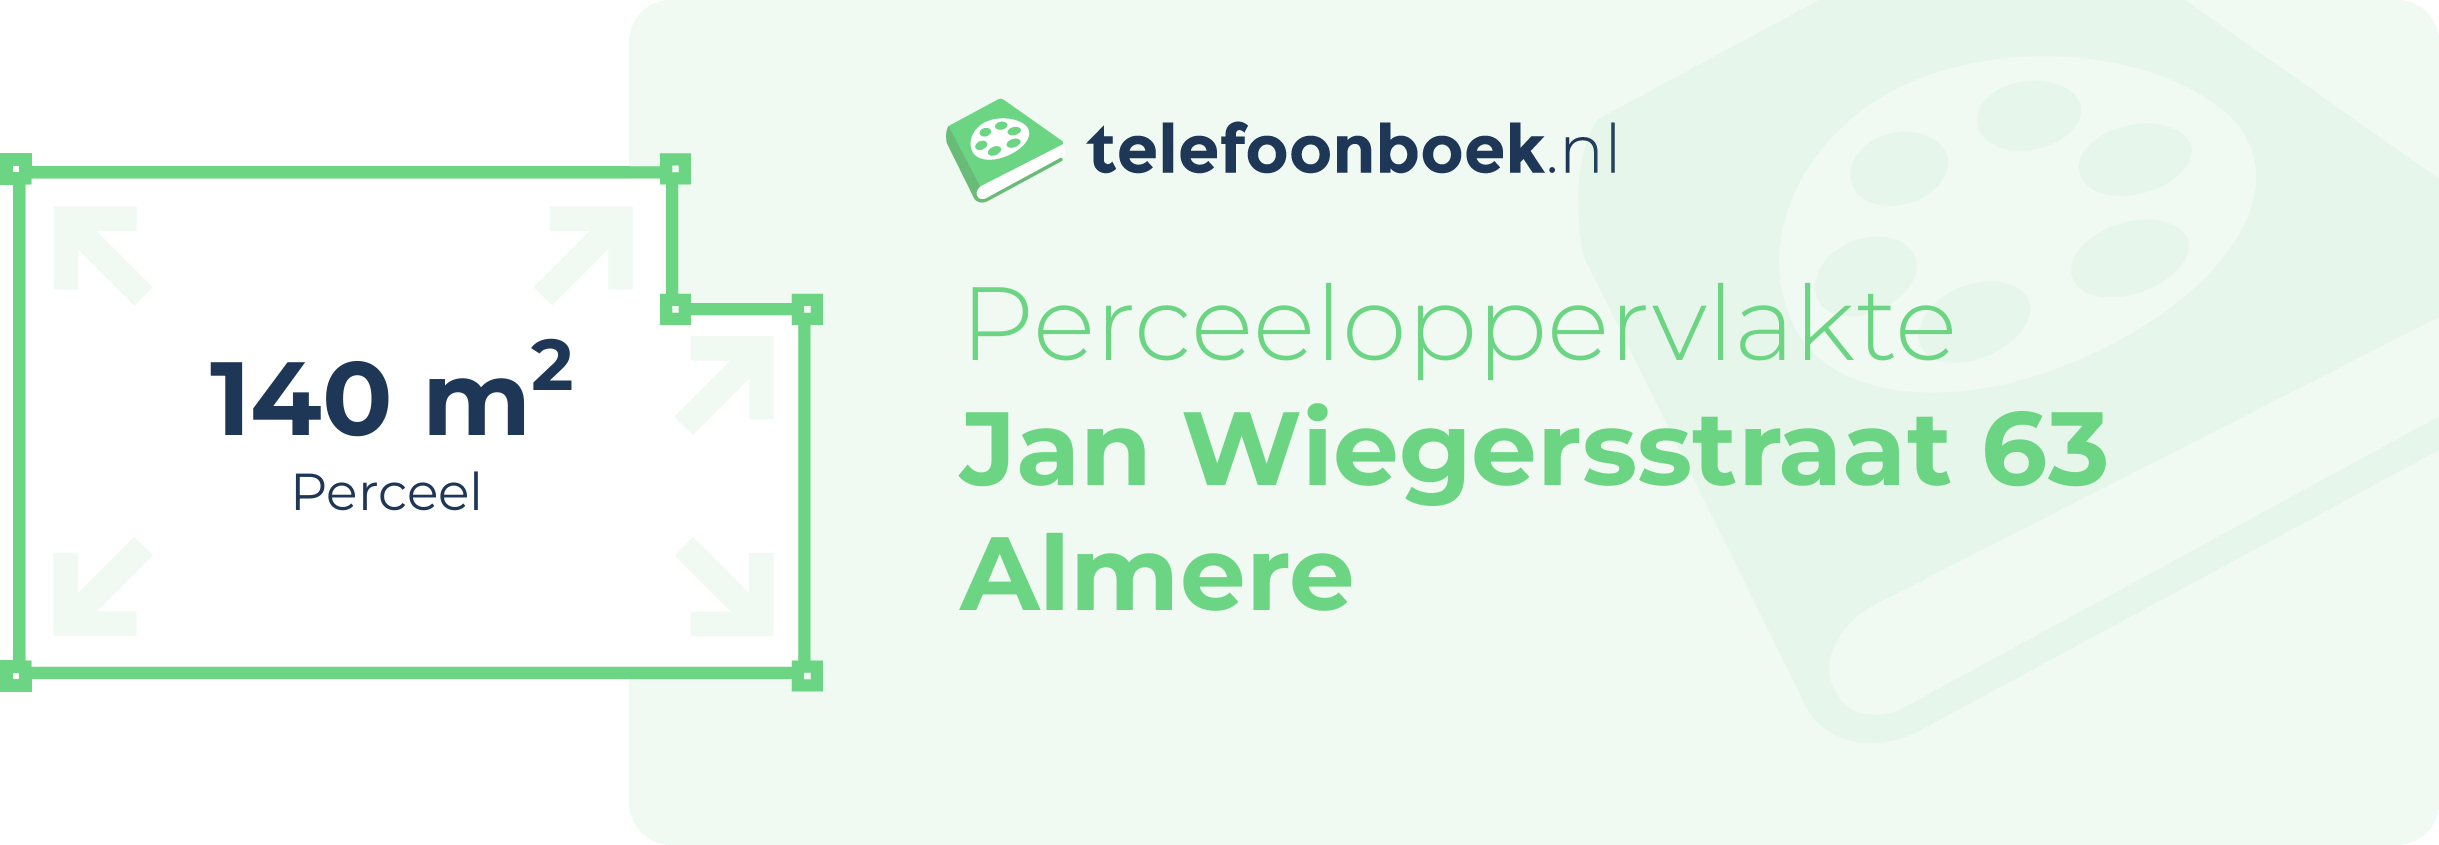 Perceeloppervlakte Jan Wiegersstraat 63 Almere